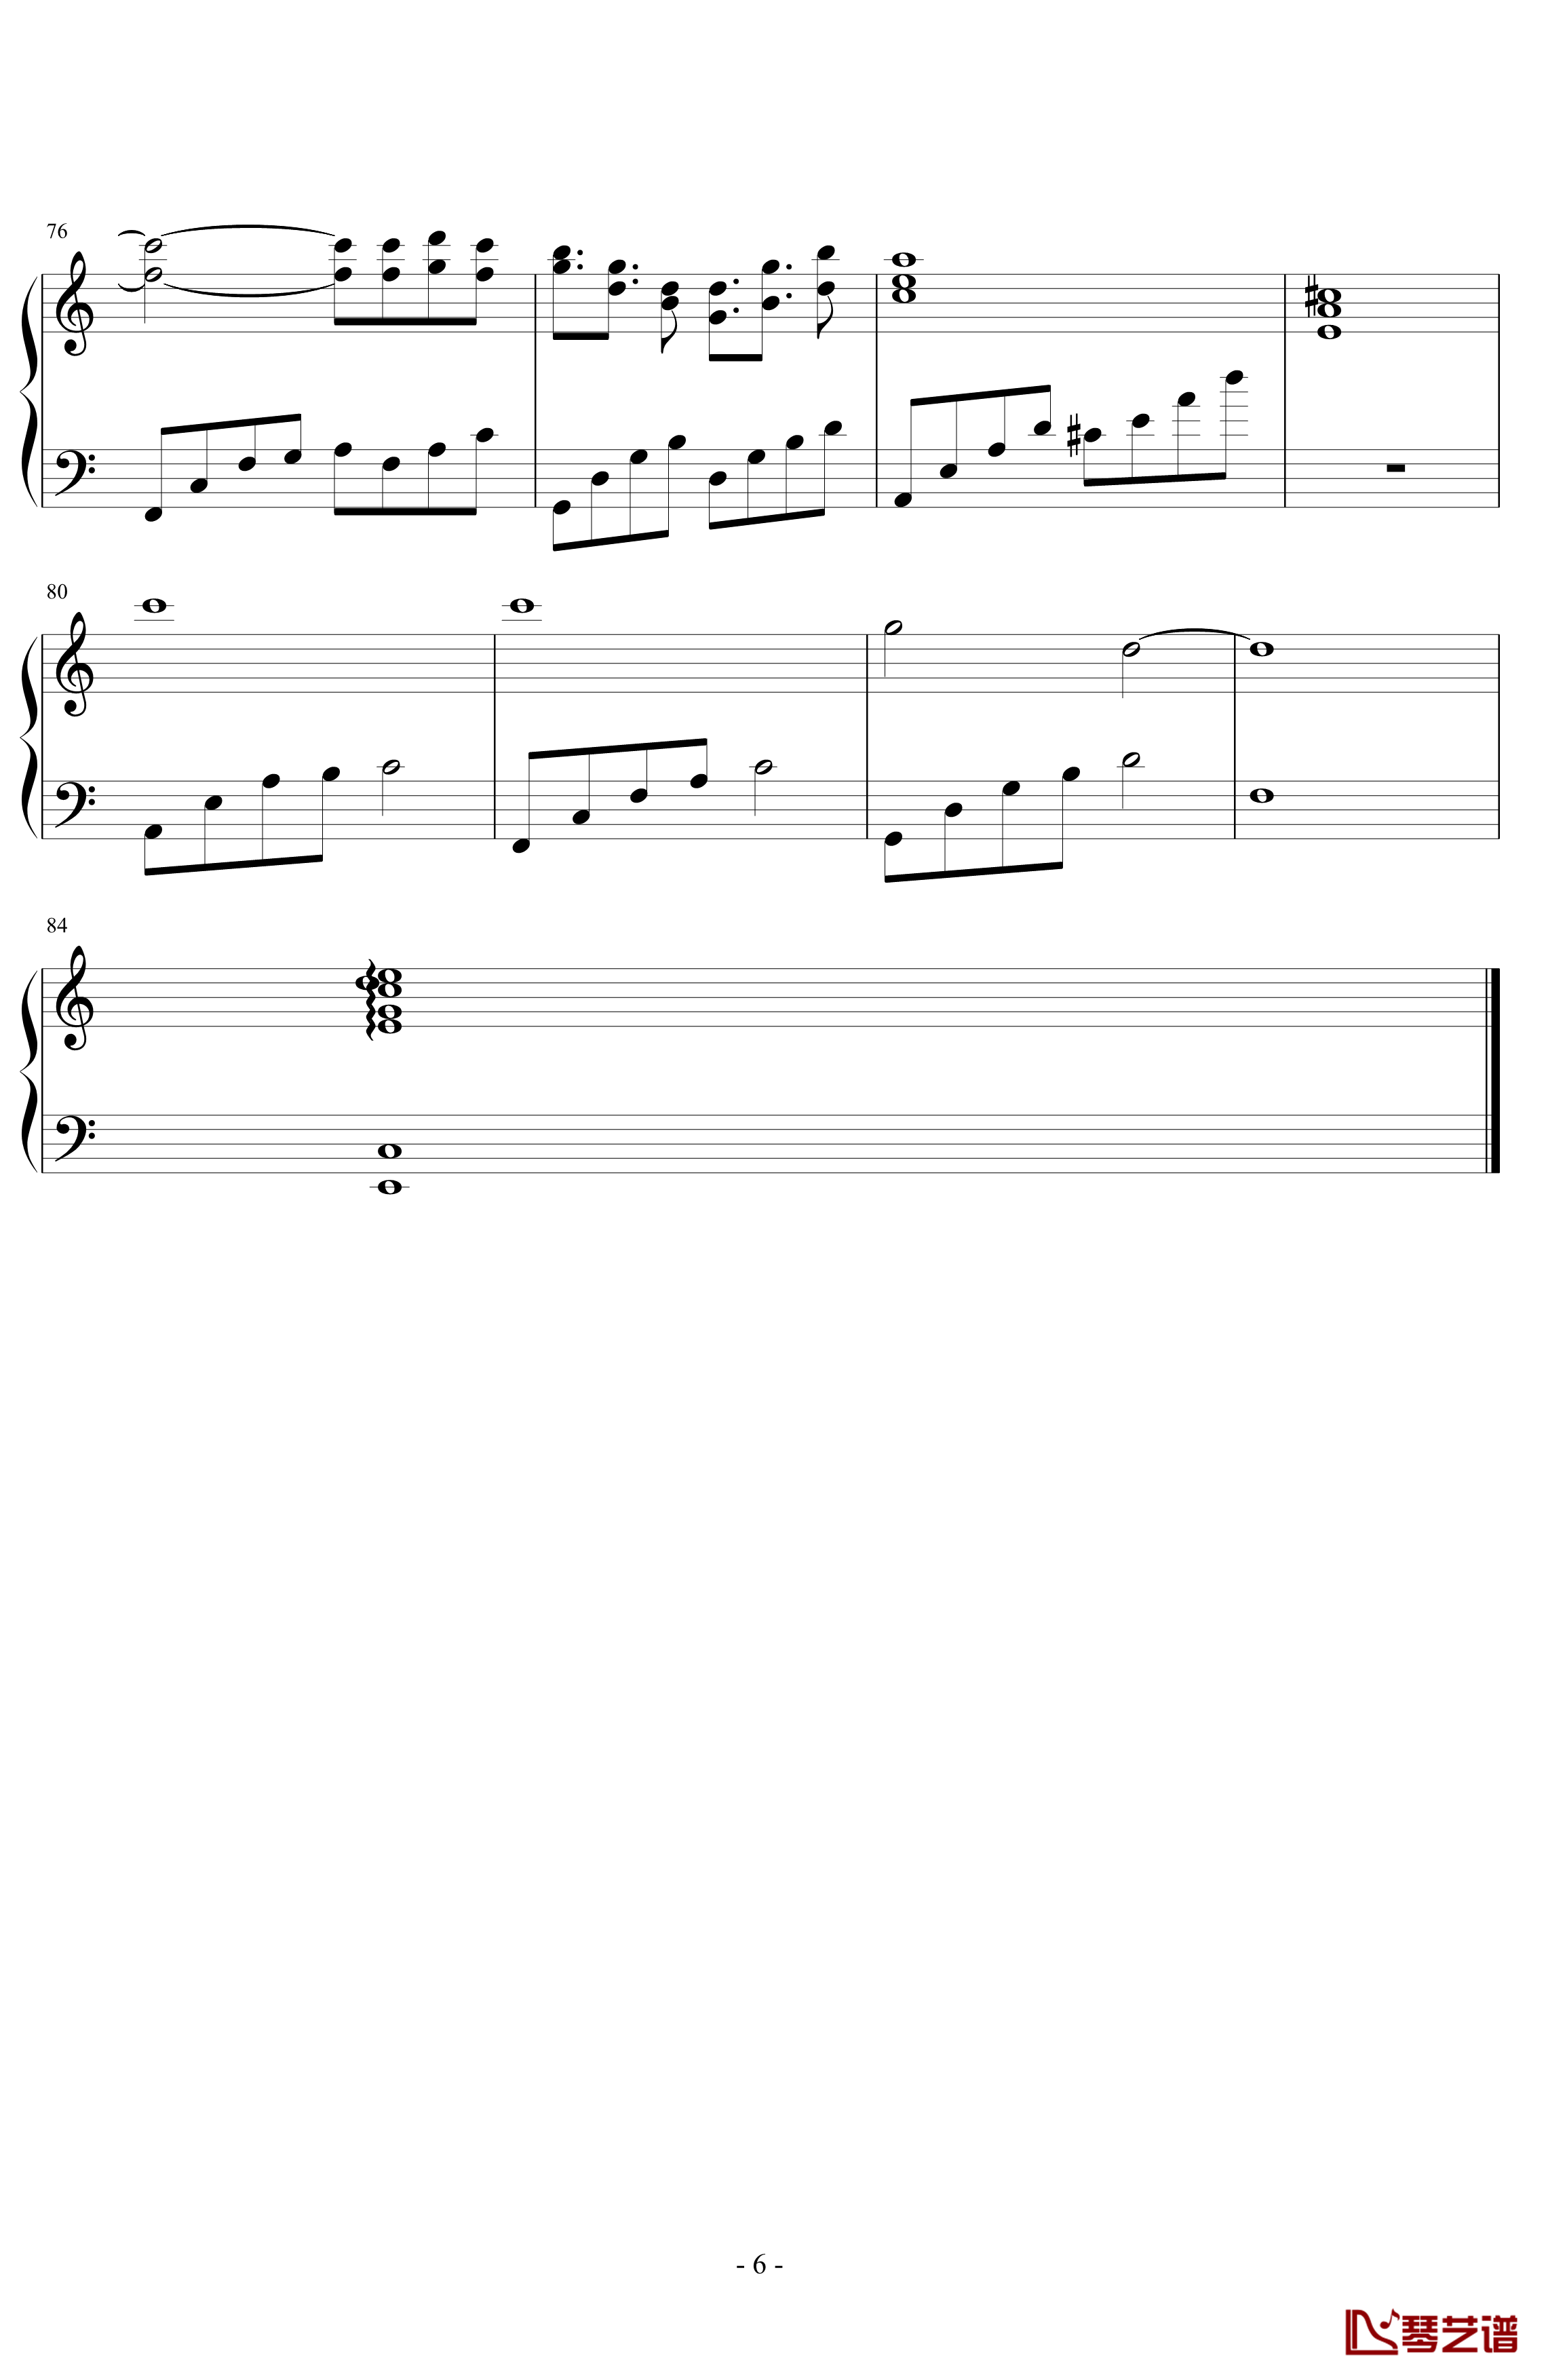 思念随想曲钢琴谱-byxdm6